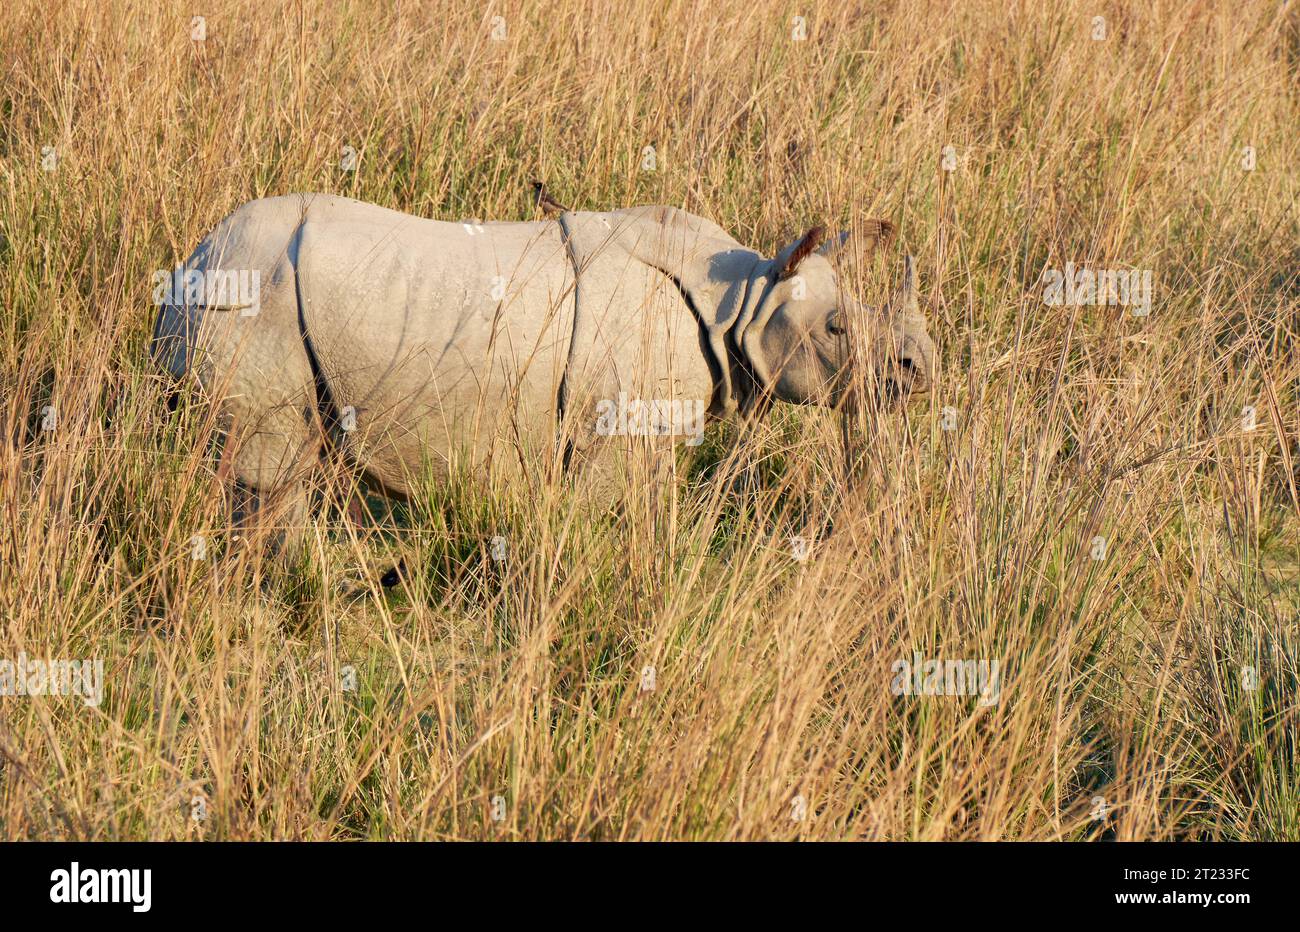 Rinoceronte indiano con una sola corna Foto Stock